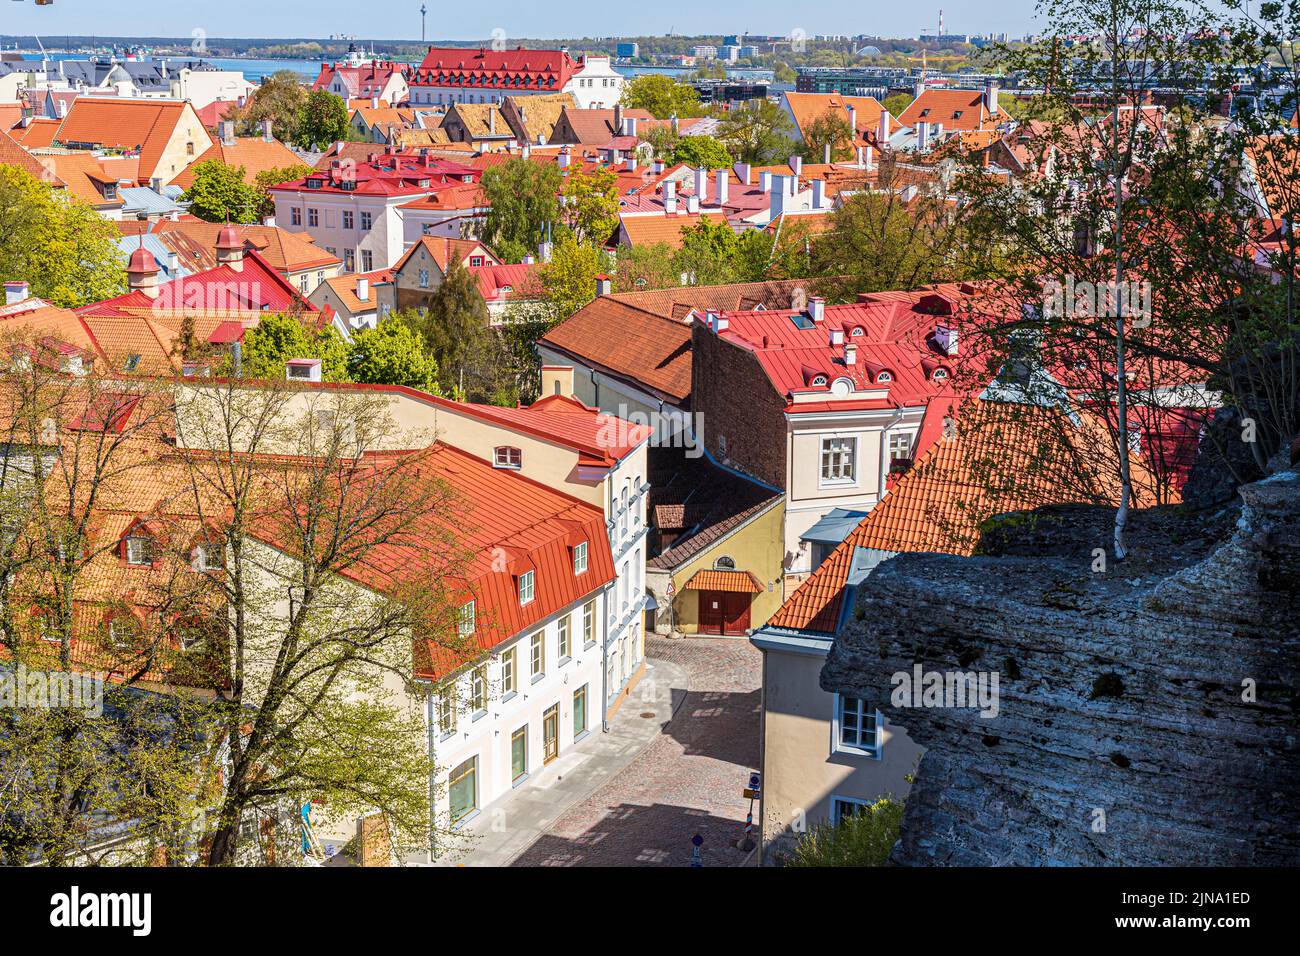 Desde la ciudad alta se puede contemplar las torres del casco antiguo de Tallinn, la capital de Estonia Foto de stock